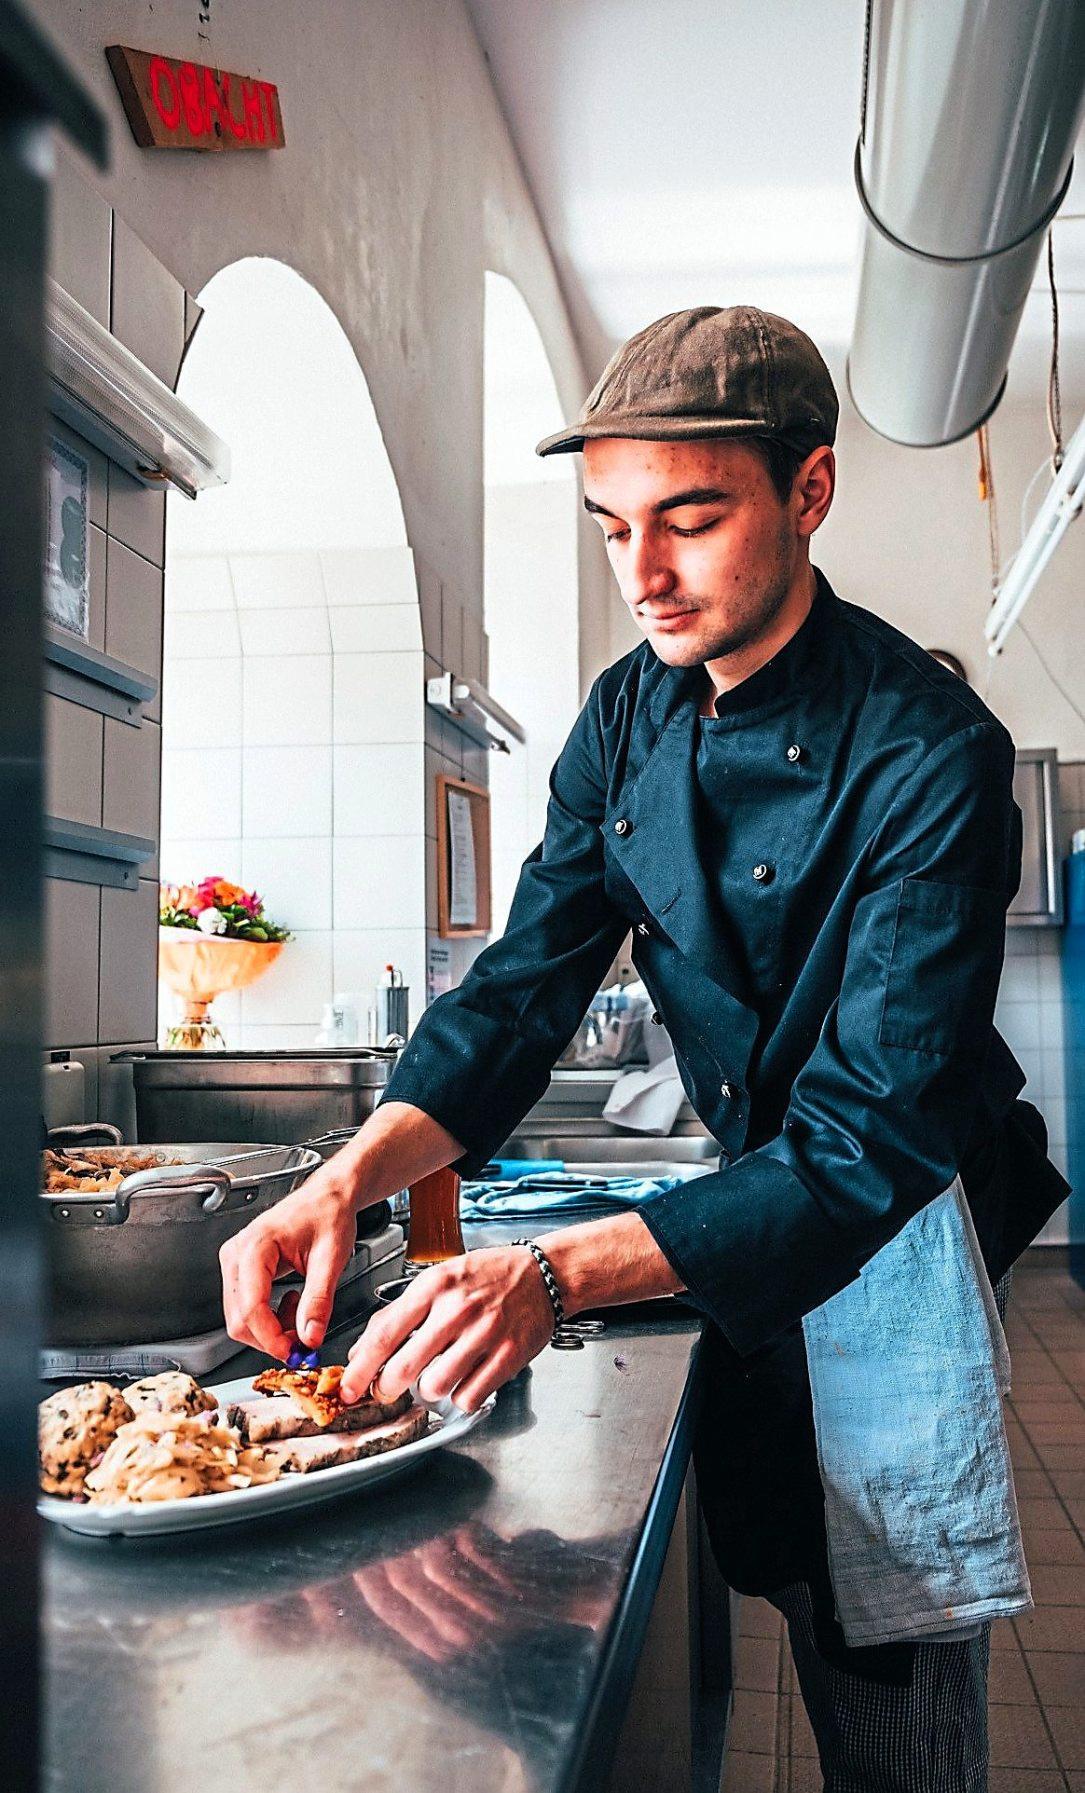 Paul Kleebinder hat seine Liebe zum Kochen bei einem Ingolstädter Projekt mit Flüchtlingen entdeckt. Foto: Marco Pirzer